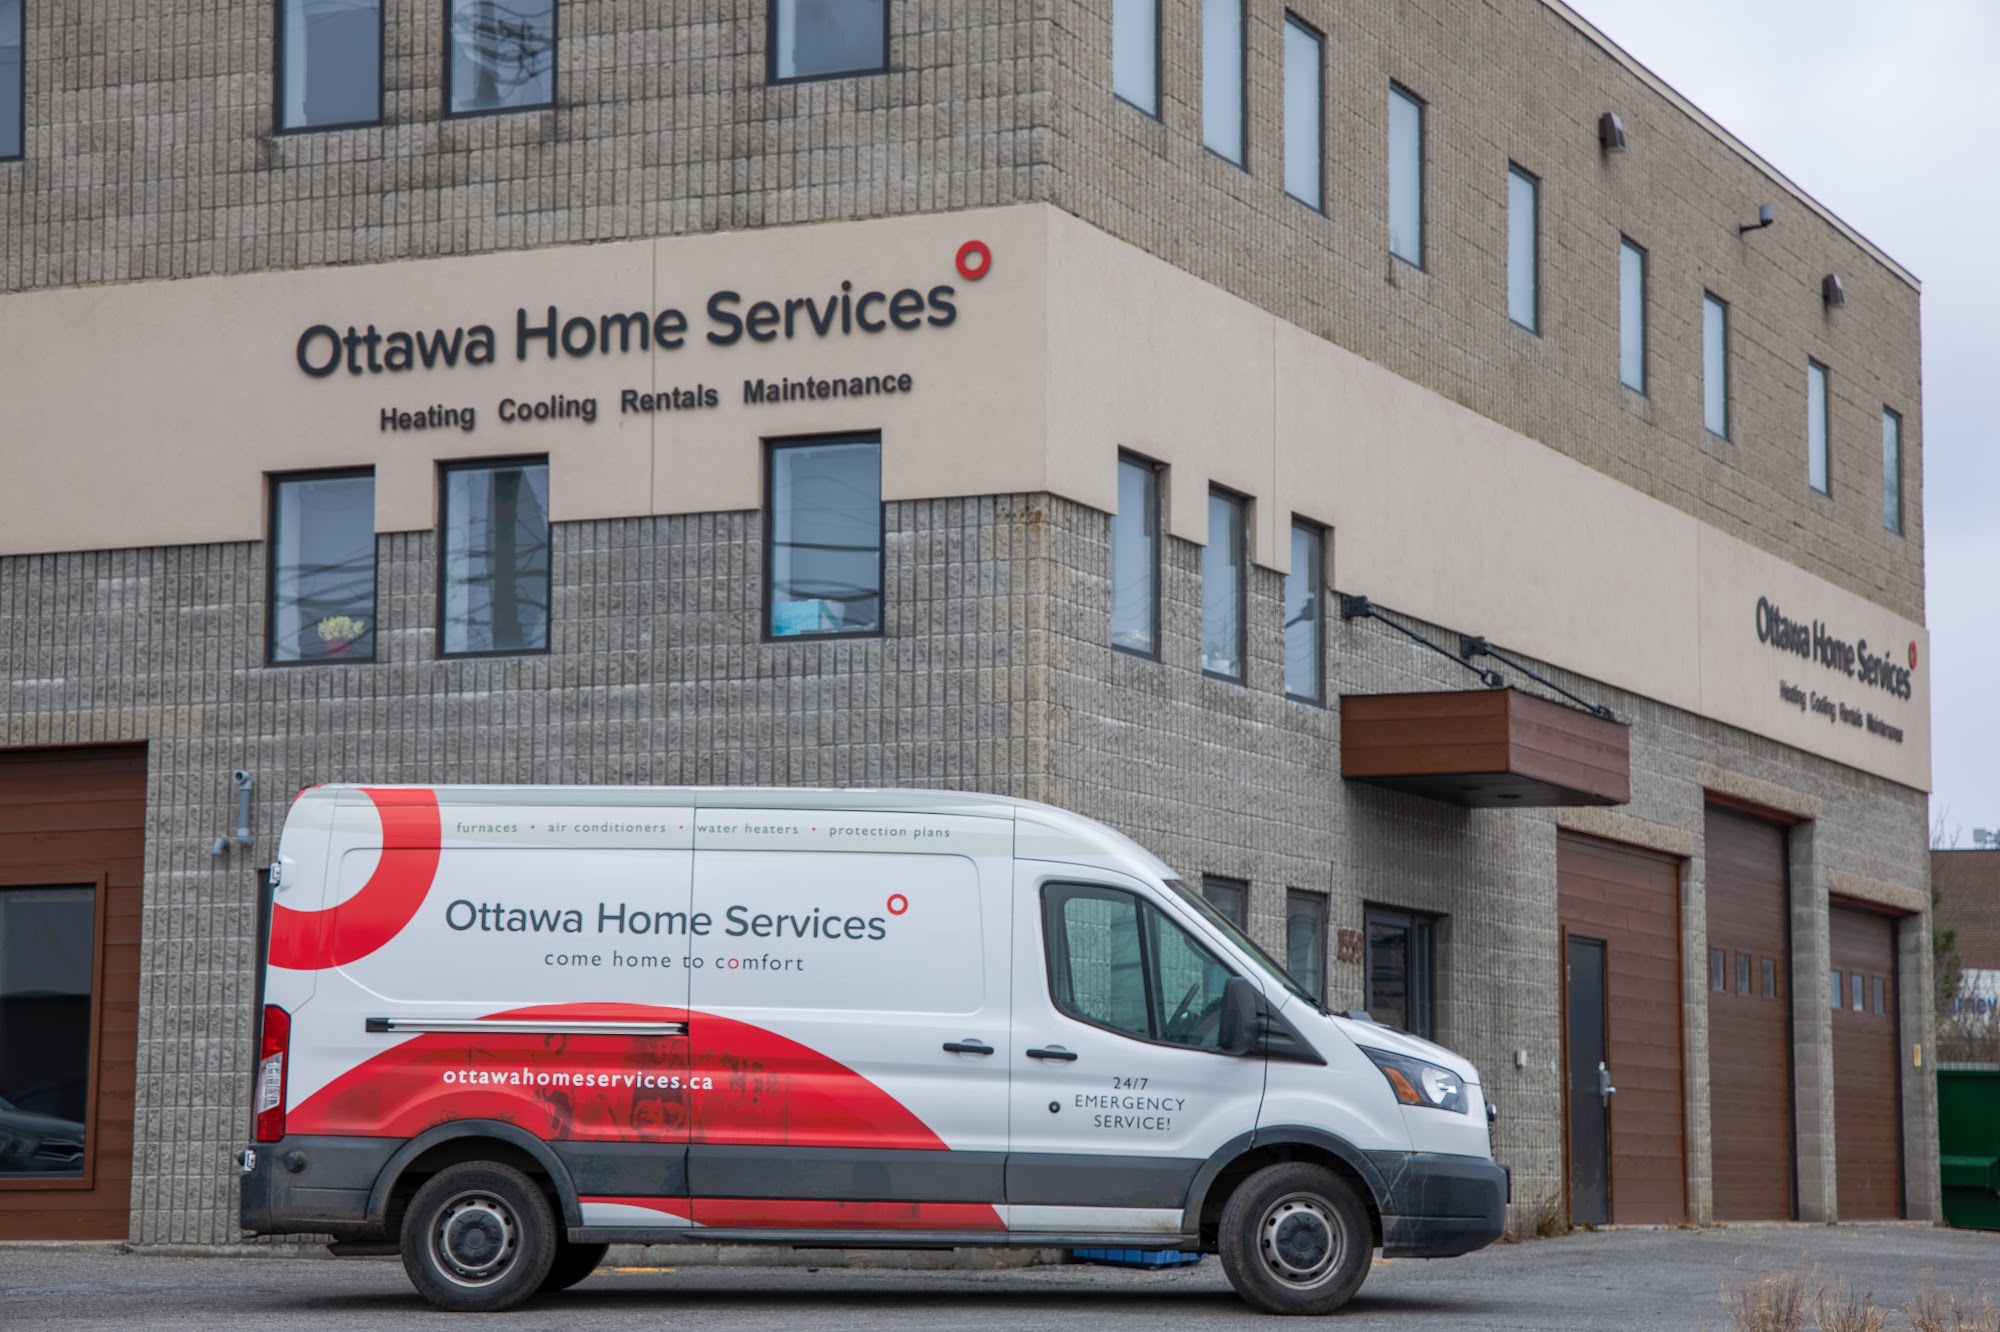 Ottawa Home Services